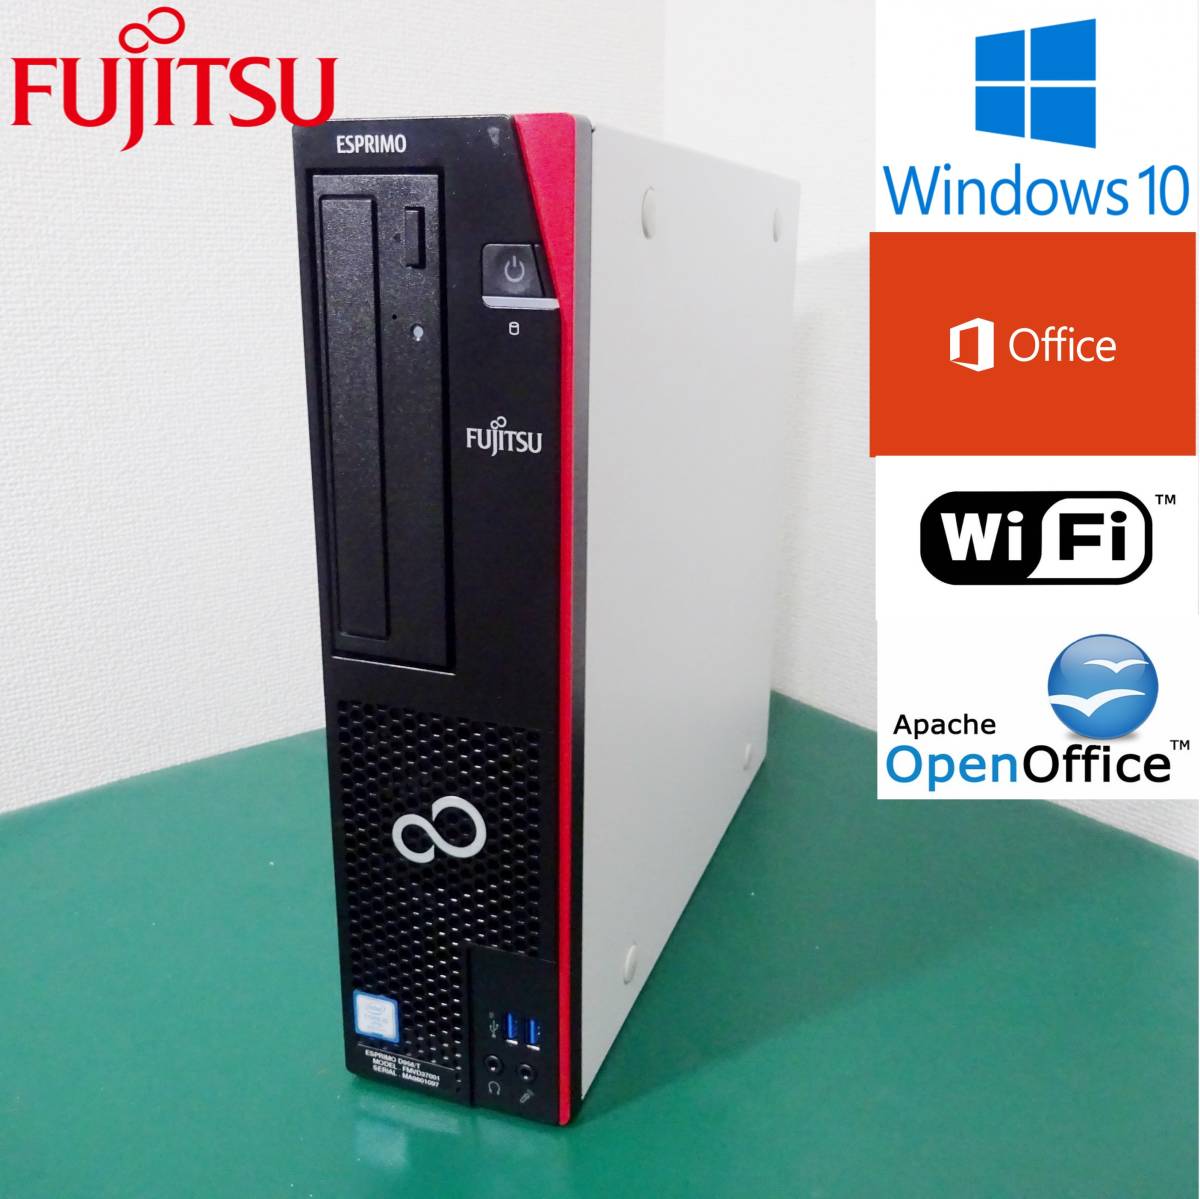 34％割引日本最大級 無線つき第8世代CPU・高性能デスクトップPC【Wifi】FUJITSU / ESPRIMO D958/T / Office /  Corei5 / 8GB / HDD500GB / Windows10 /A152 富士通 パソコン コンピュータ-FALCONMX.COM